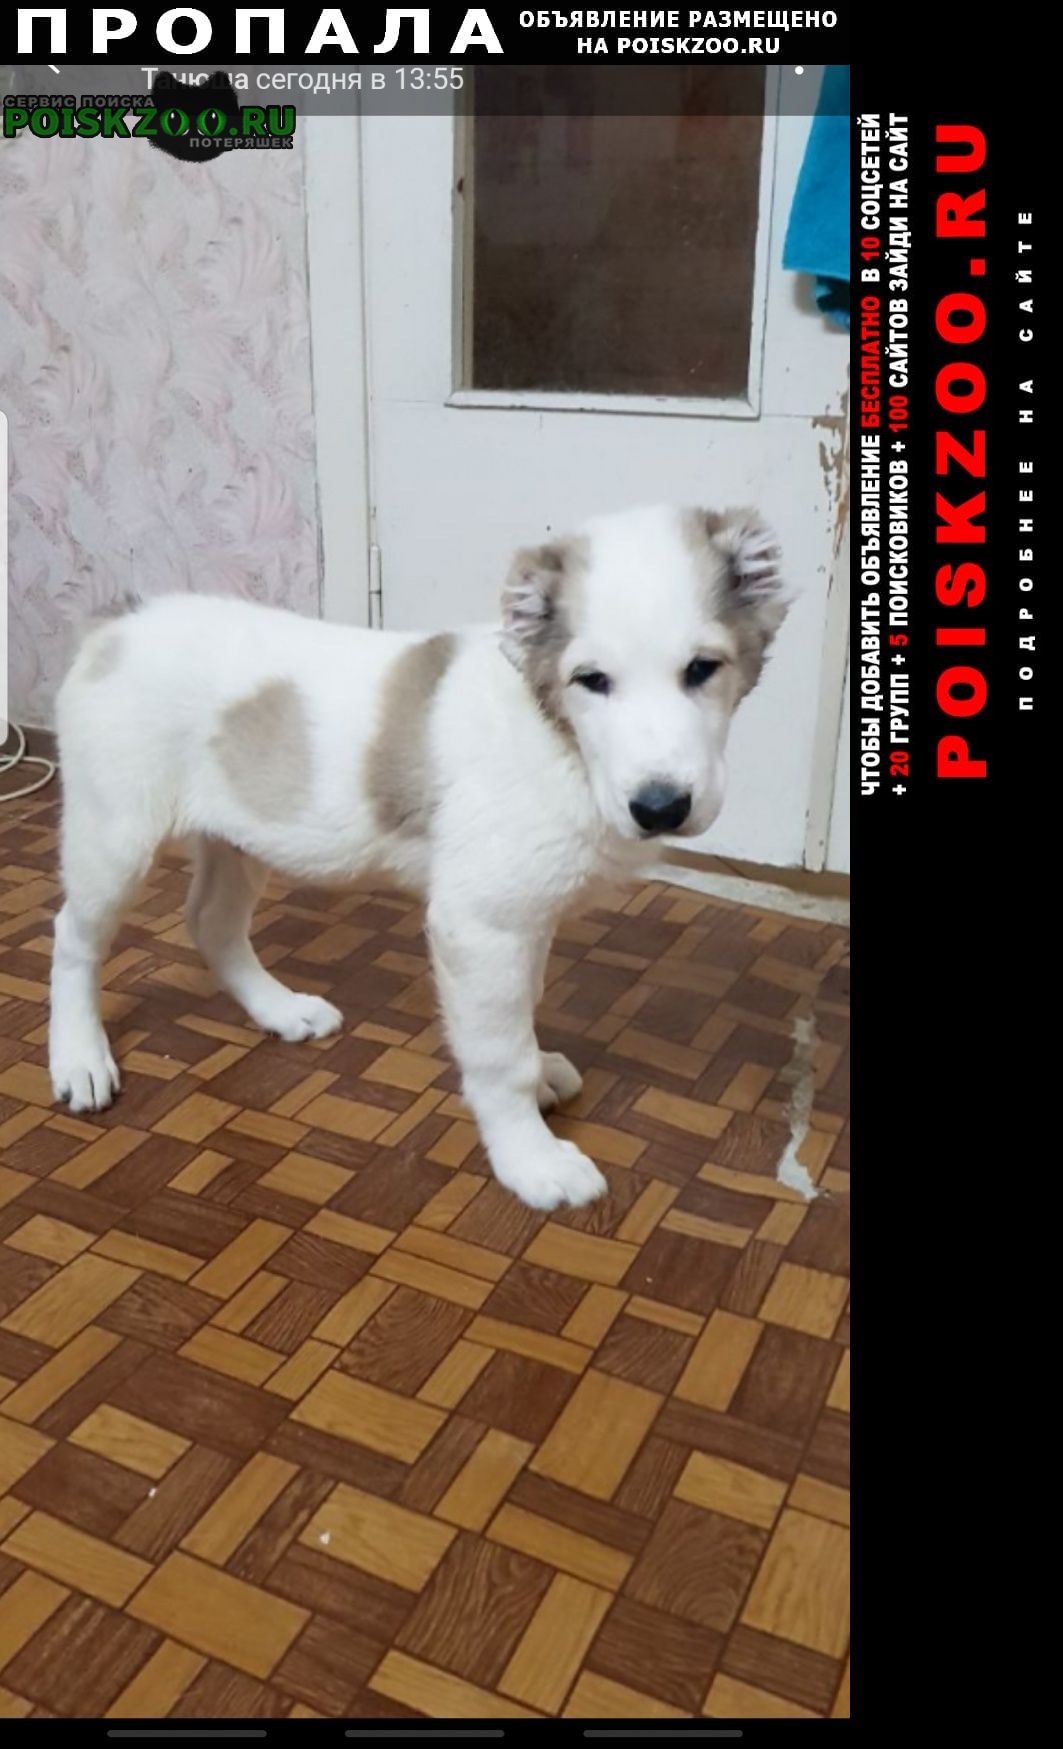 Пропала собака кобель Нижний Новгород